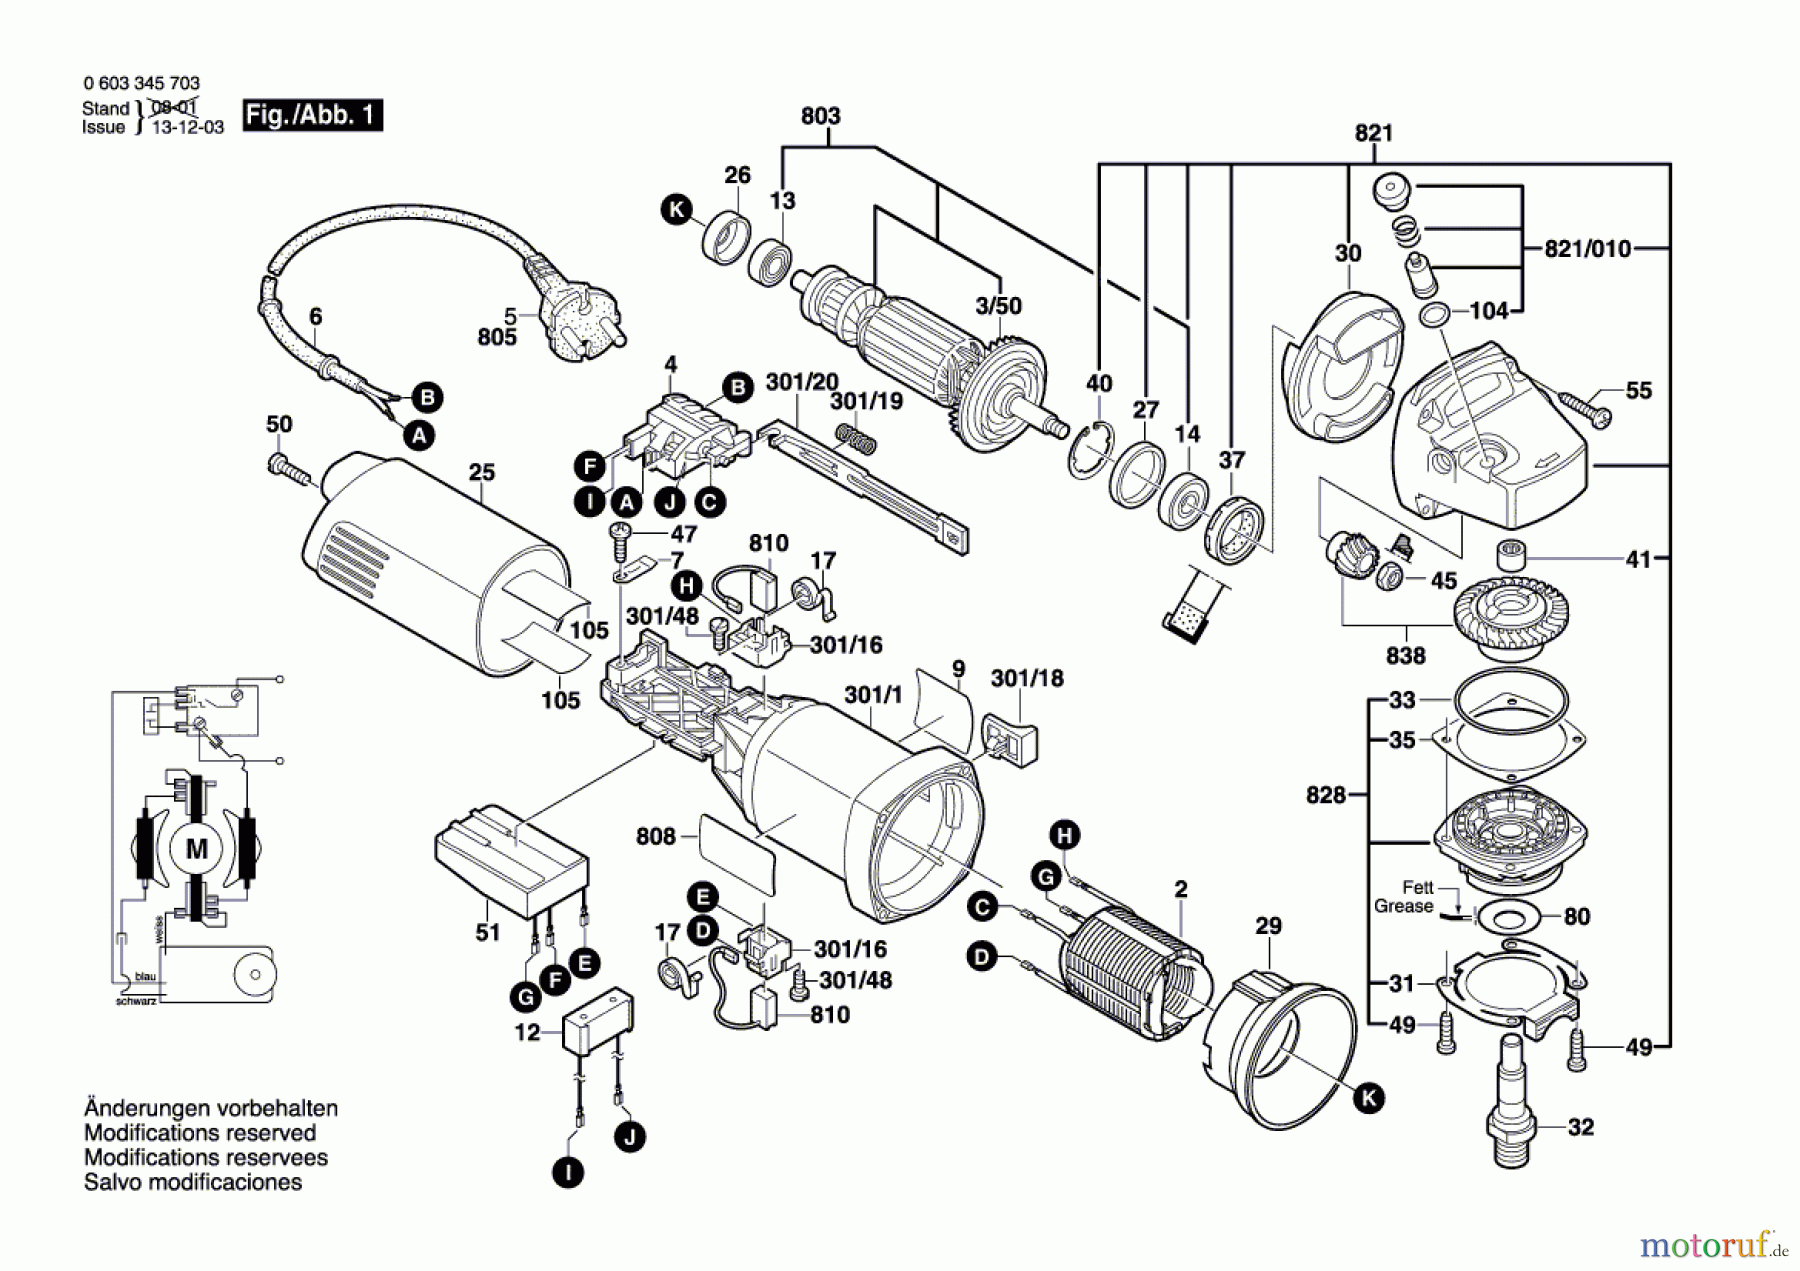  Bosch Werkzeug Winkelschleifer PWS 13-125 CE Seite 1